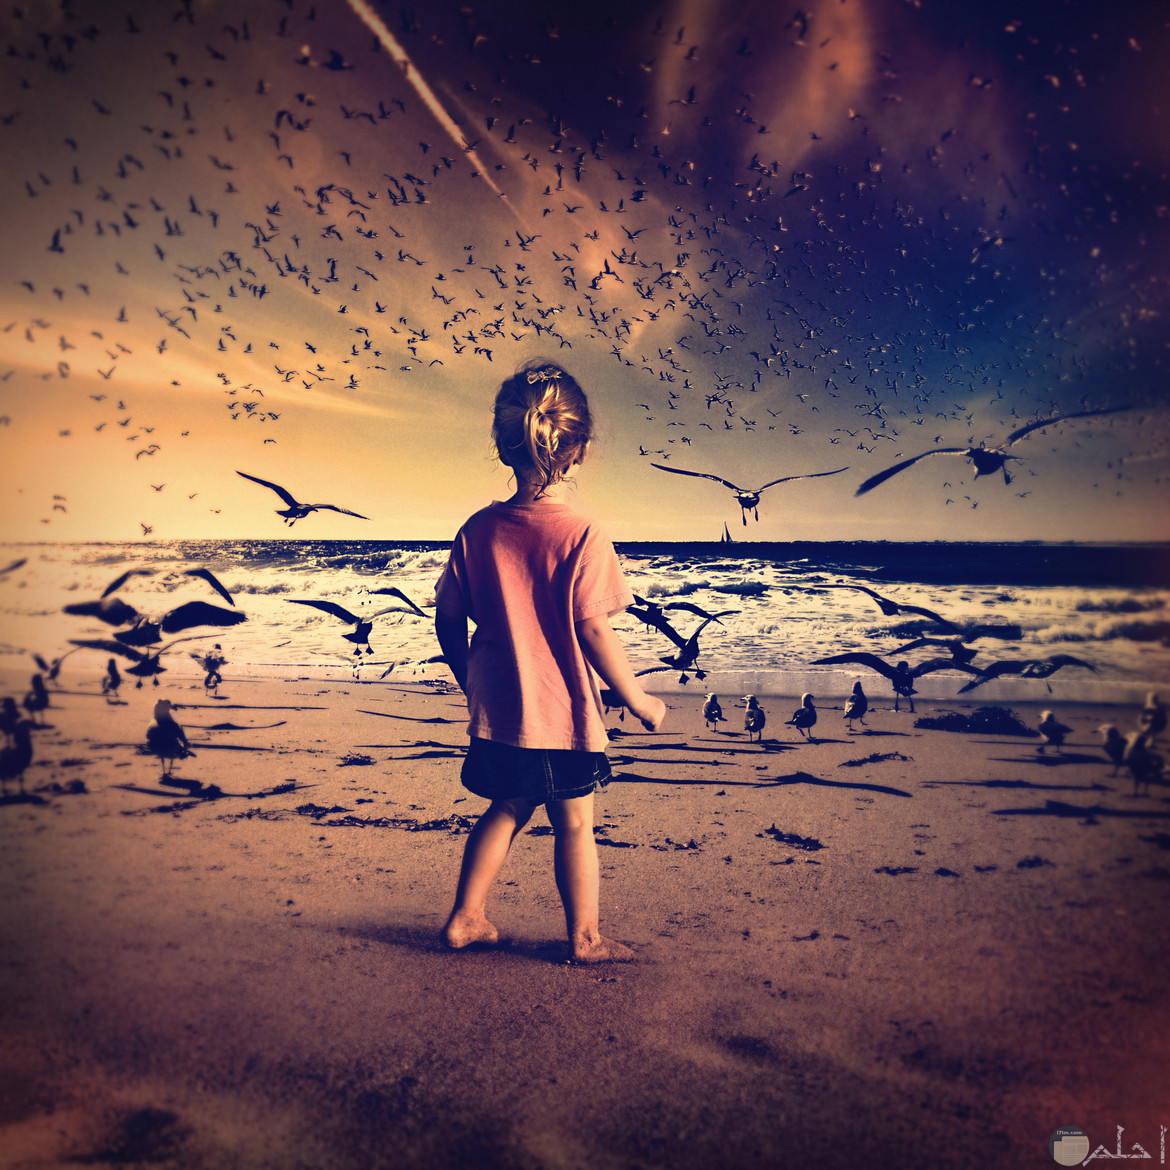 بنت صغيرة واقفه على شاطئ بحر حول مجموعه من الطيور